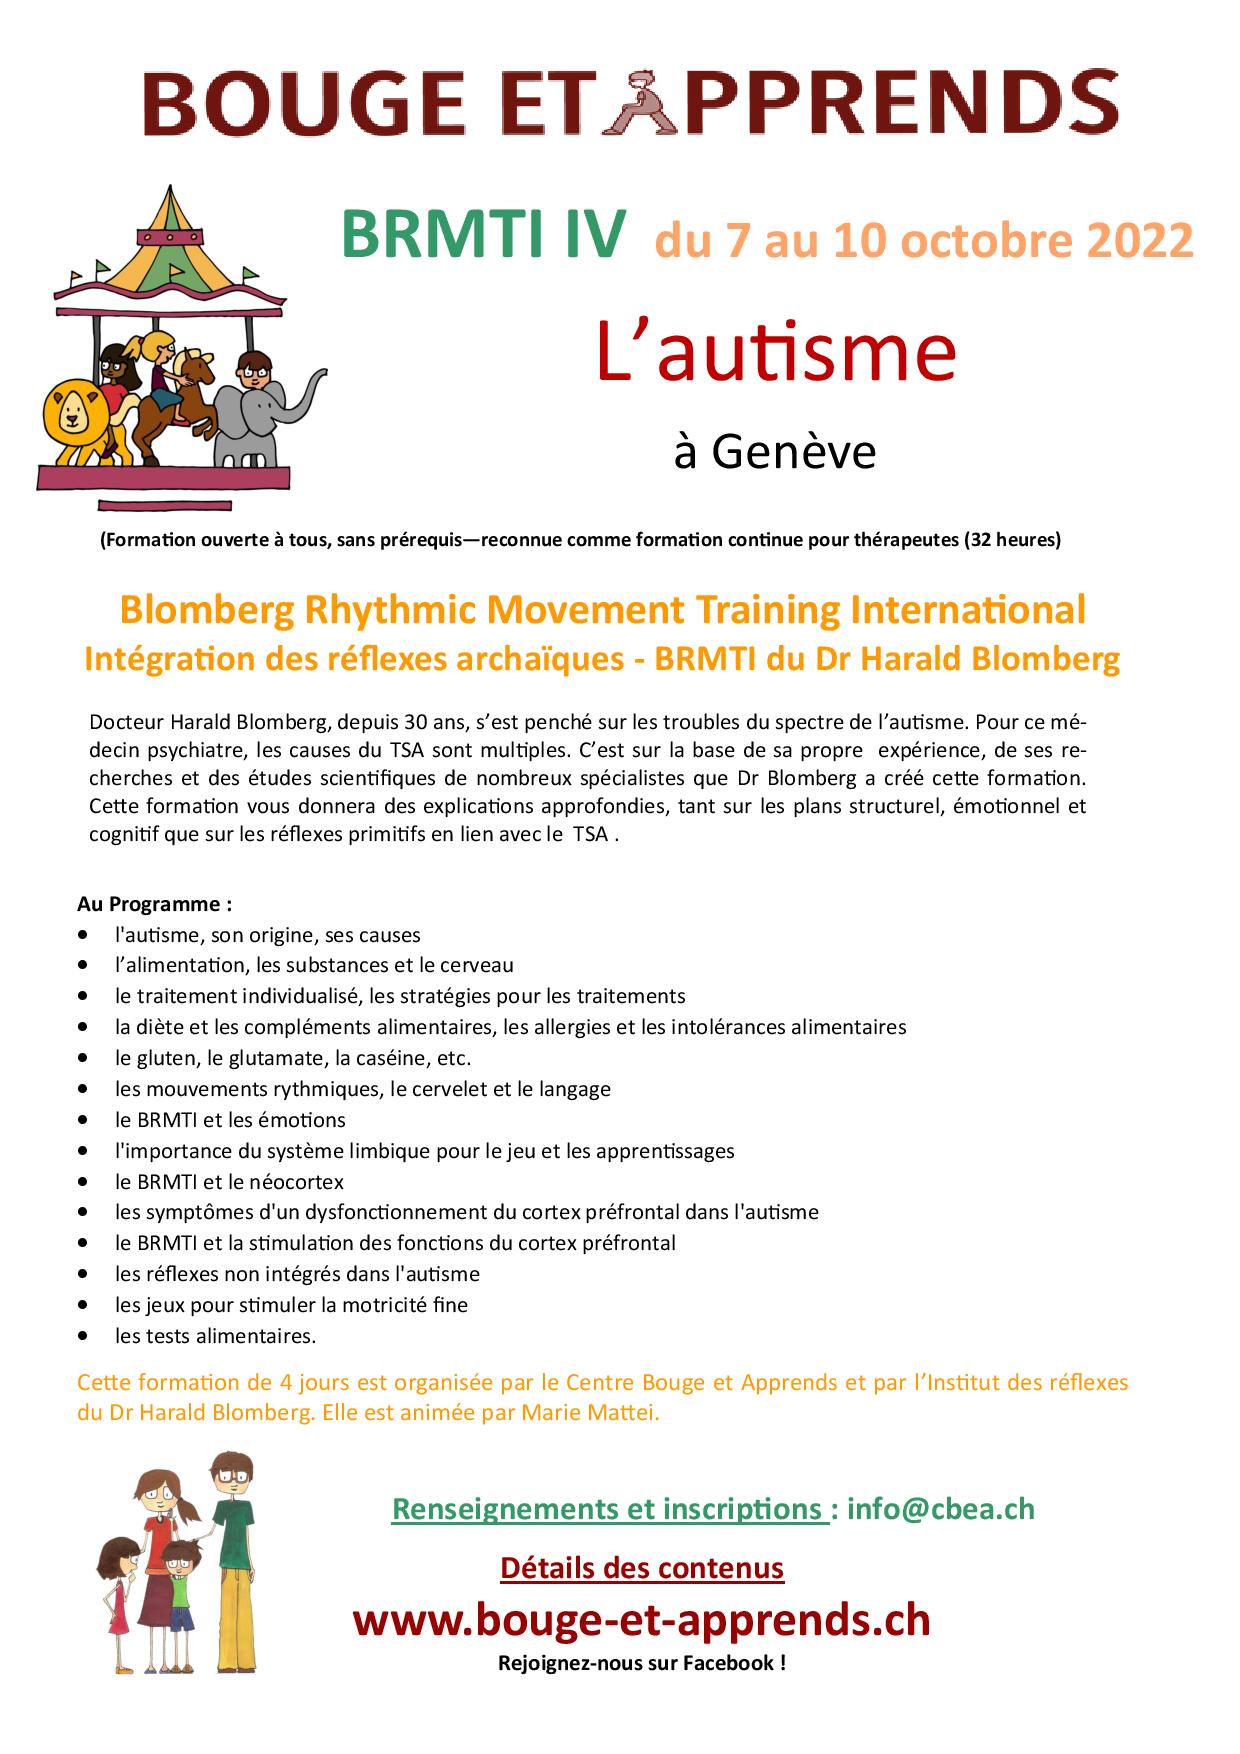 RMT IV autisme Genève 7 10 octobre 2022